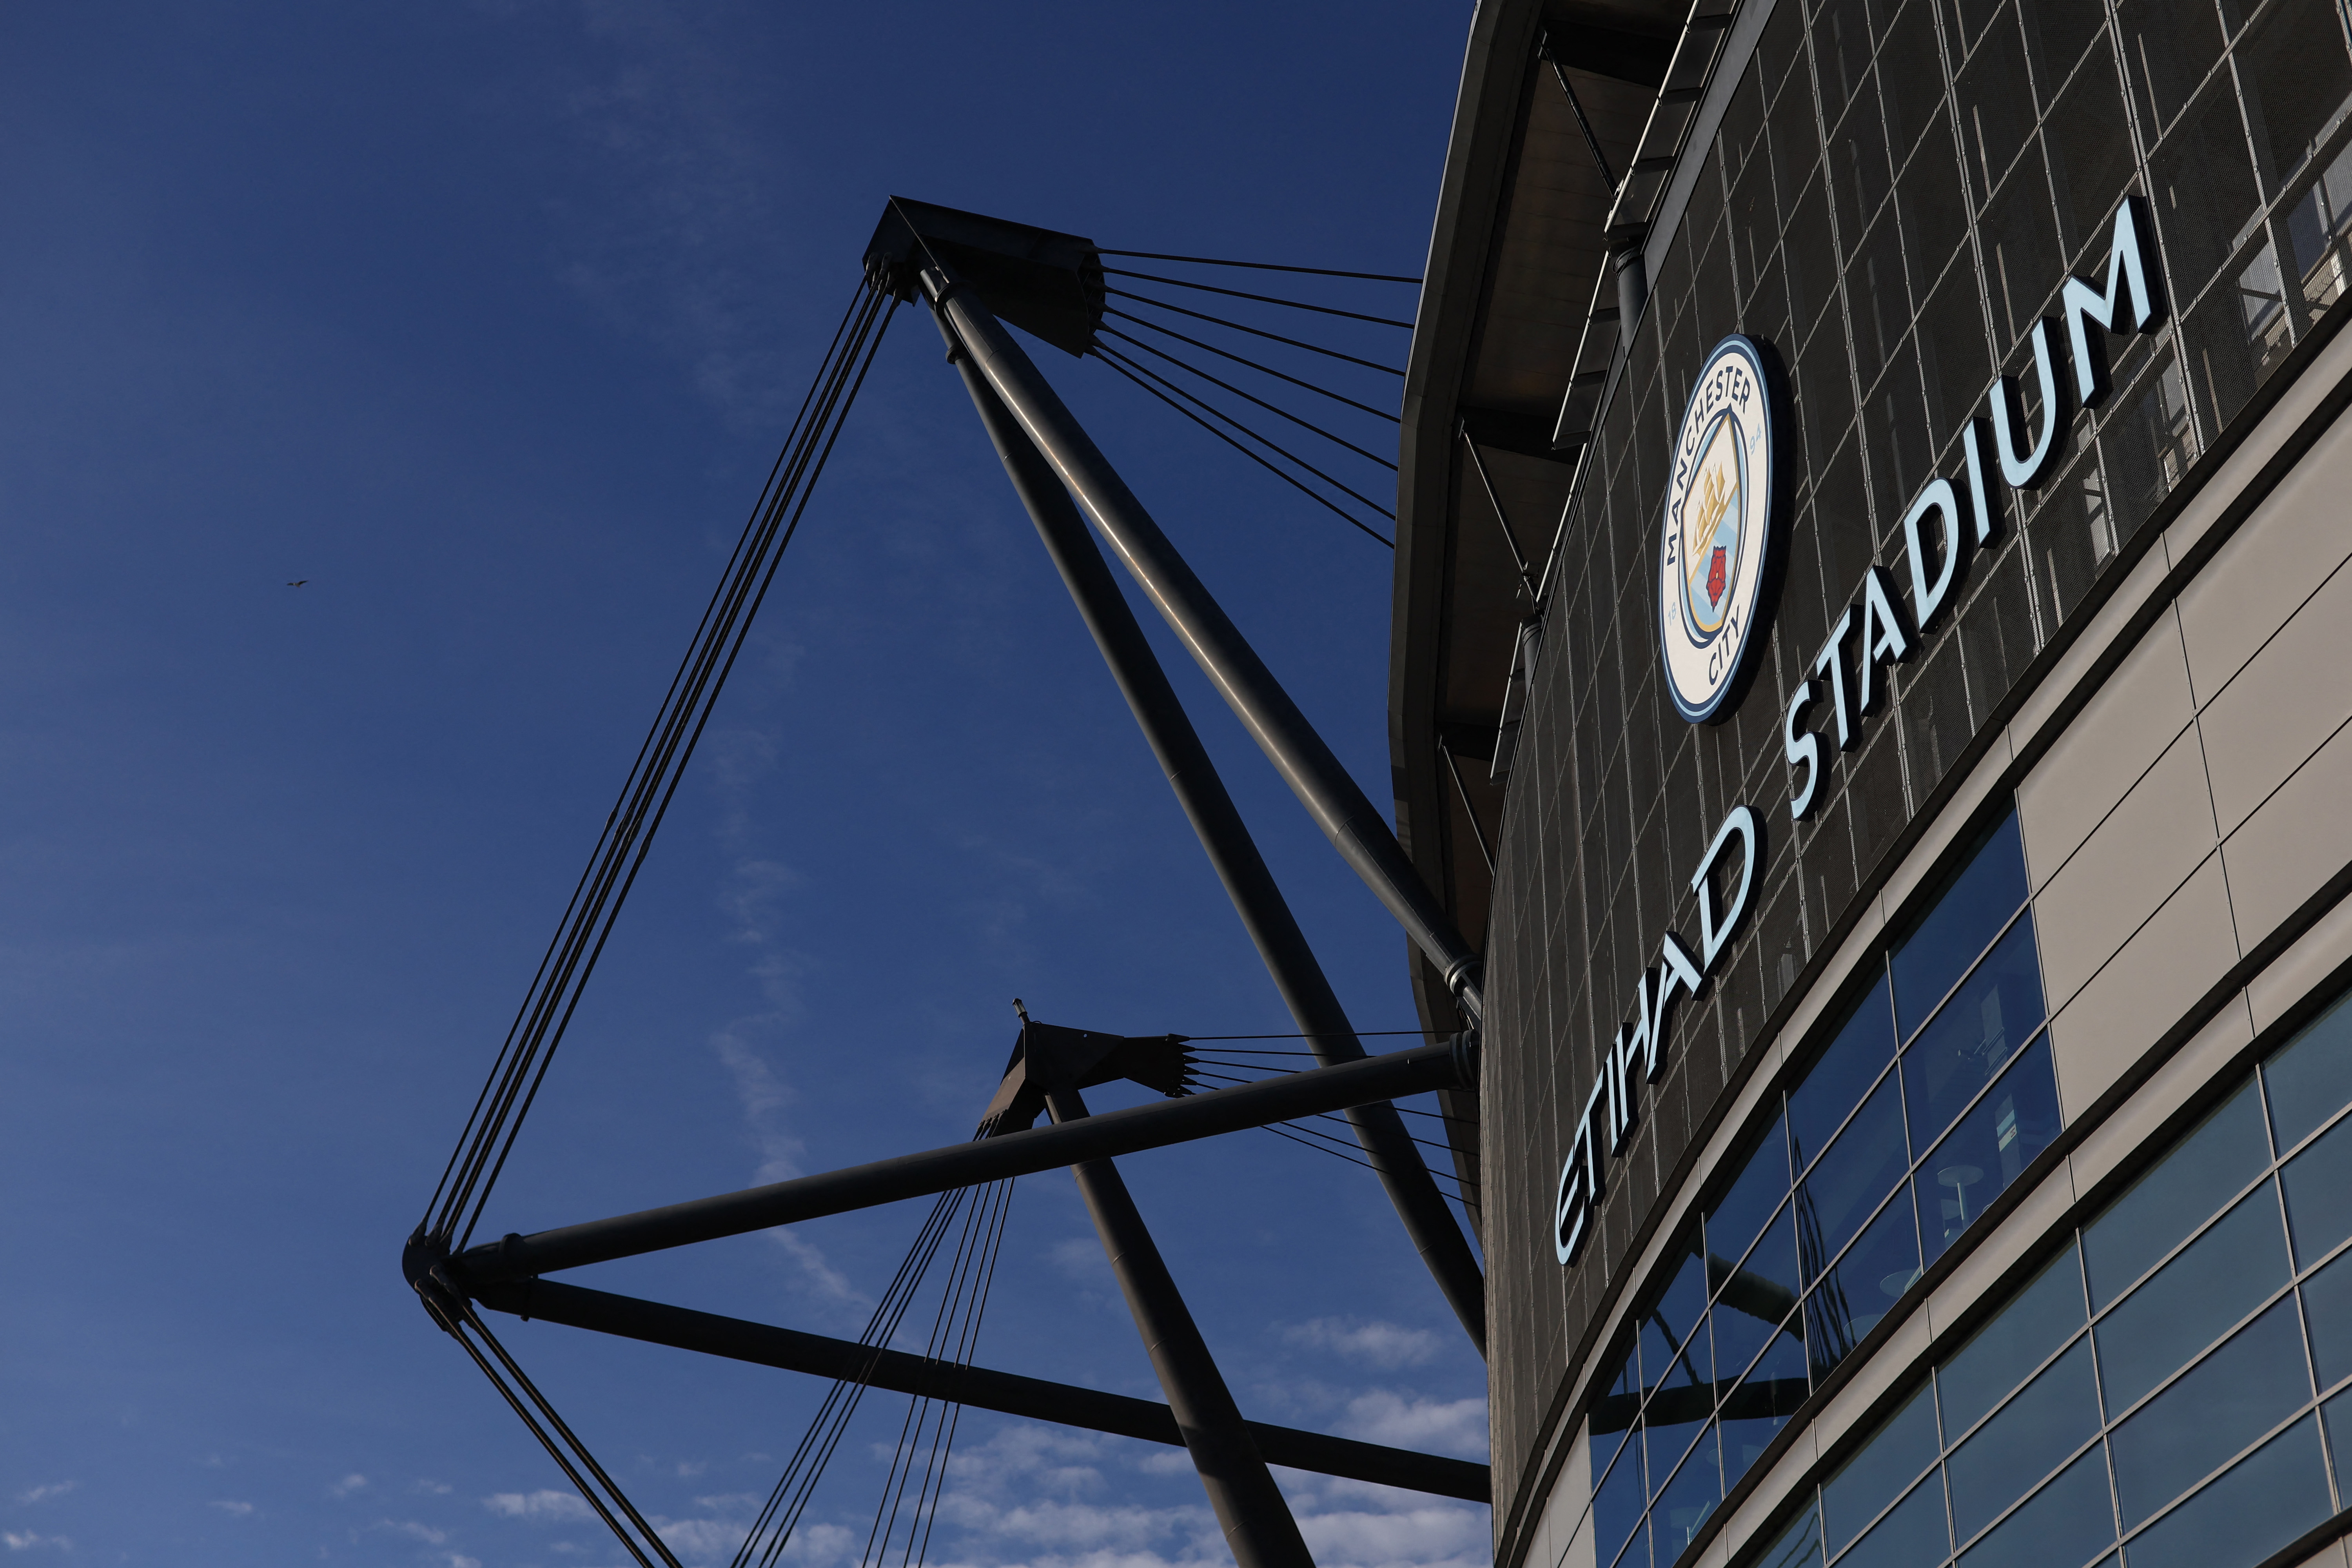 La Premier League debe determinar si efectivamente el club alteró datos financieros (Reuters)